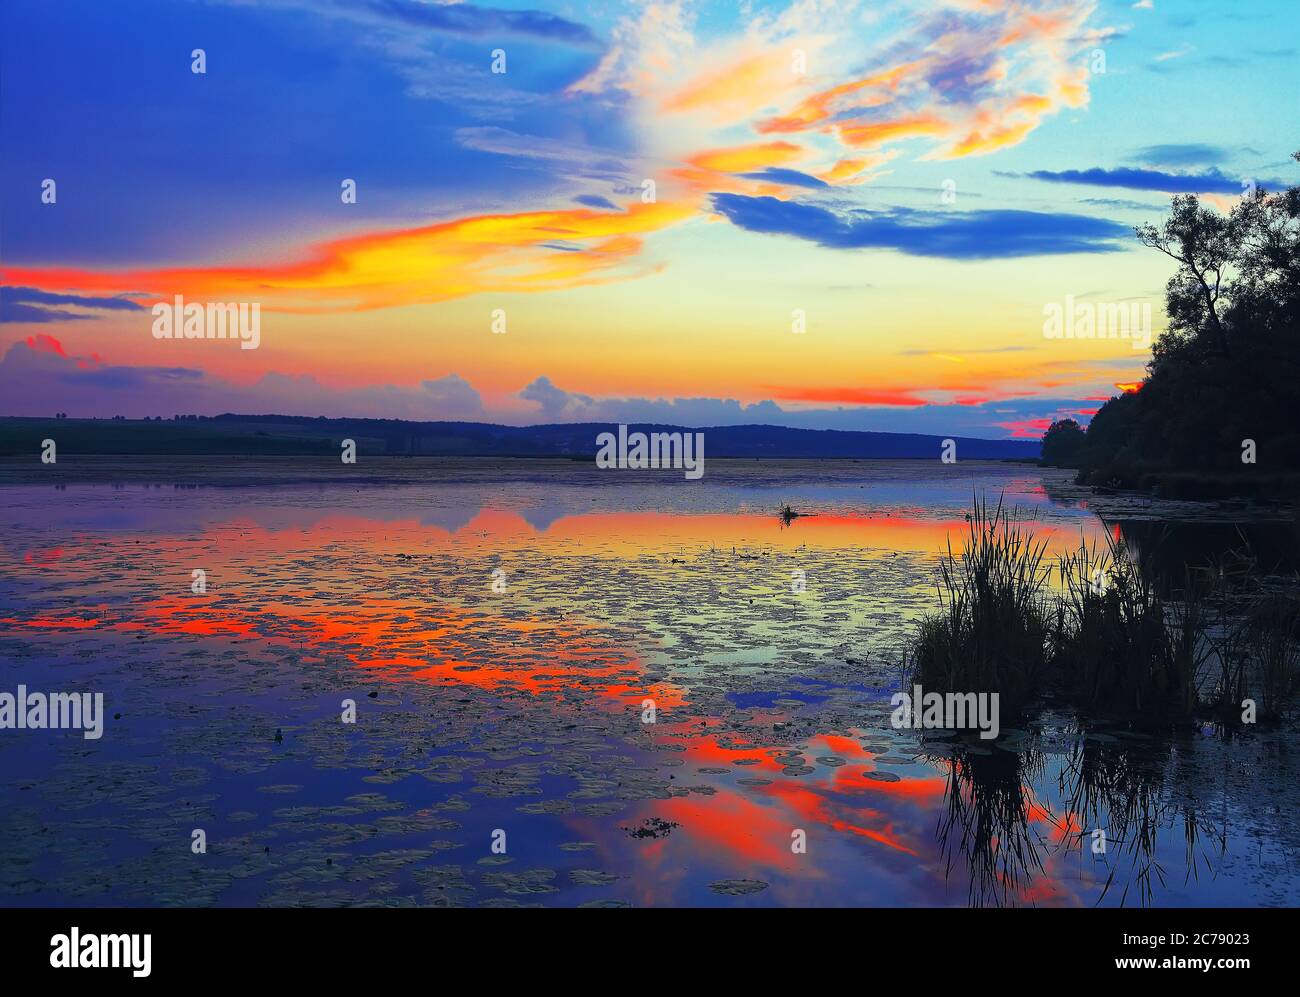 Coucher de soleil spectaculaire sur le lac.nénuphars sur le lac. Crépuscule.  Réflexion miroir dans l'eau Photo Stock - Alamy